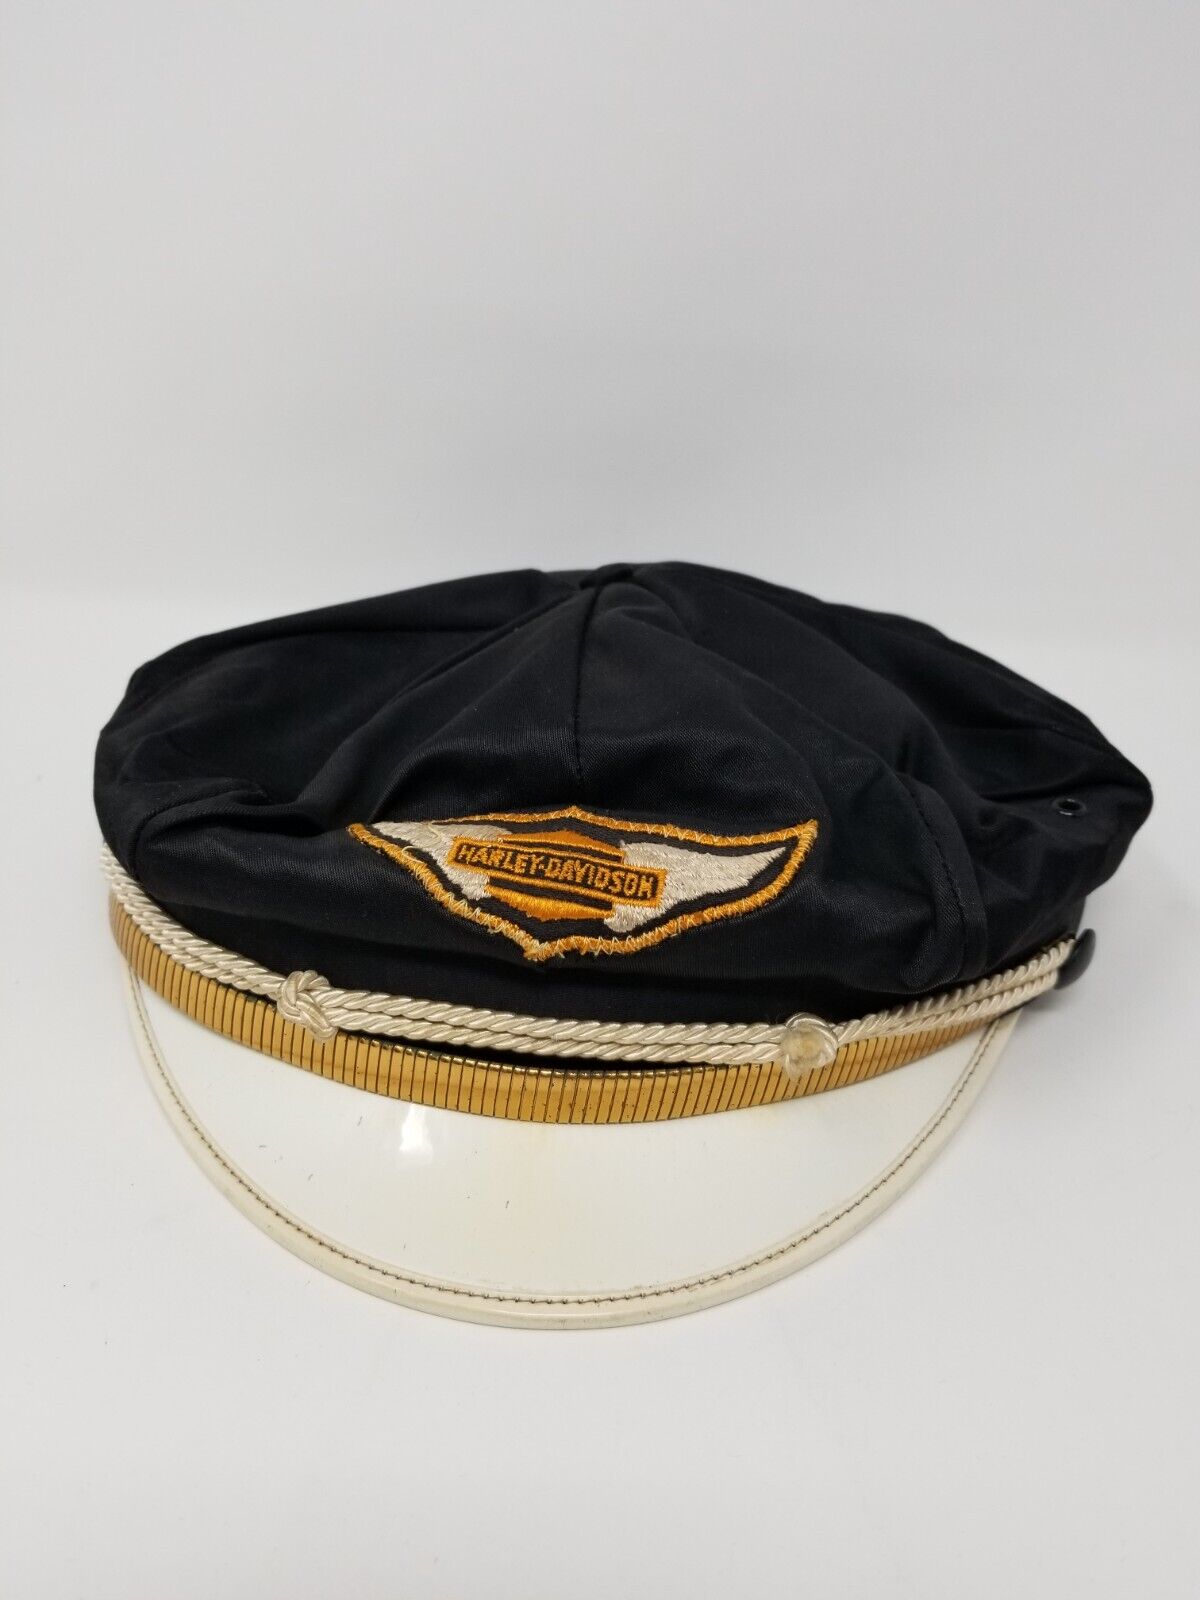 VTG 40s 50 Harley Davidson Captain's Hat - Great Shape Size 7 1/4 - Gold Band